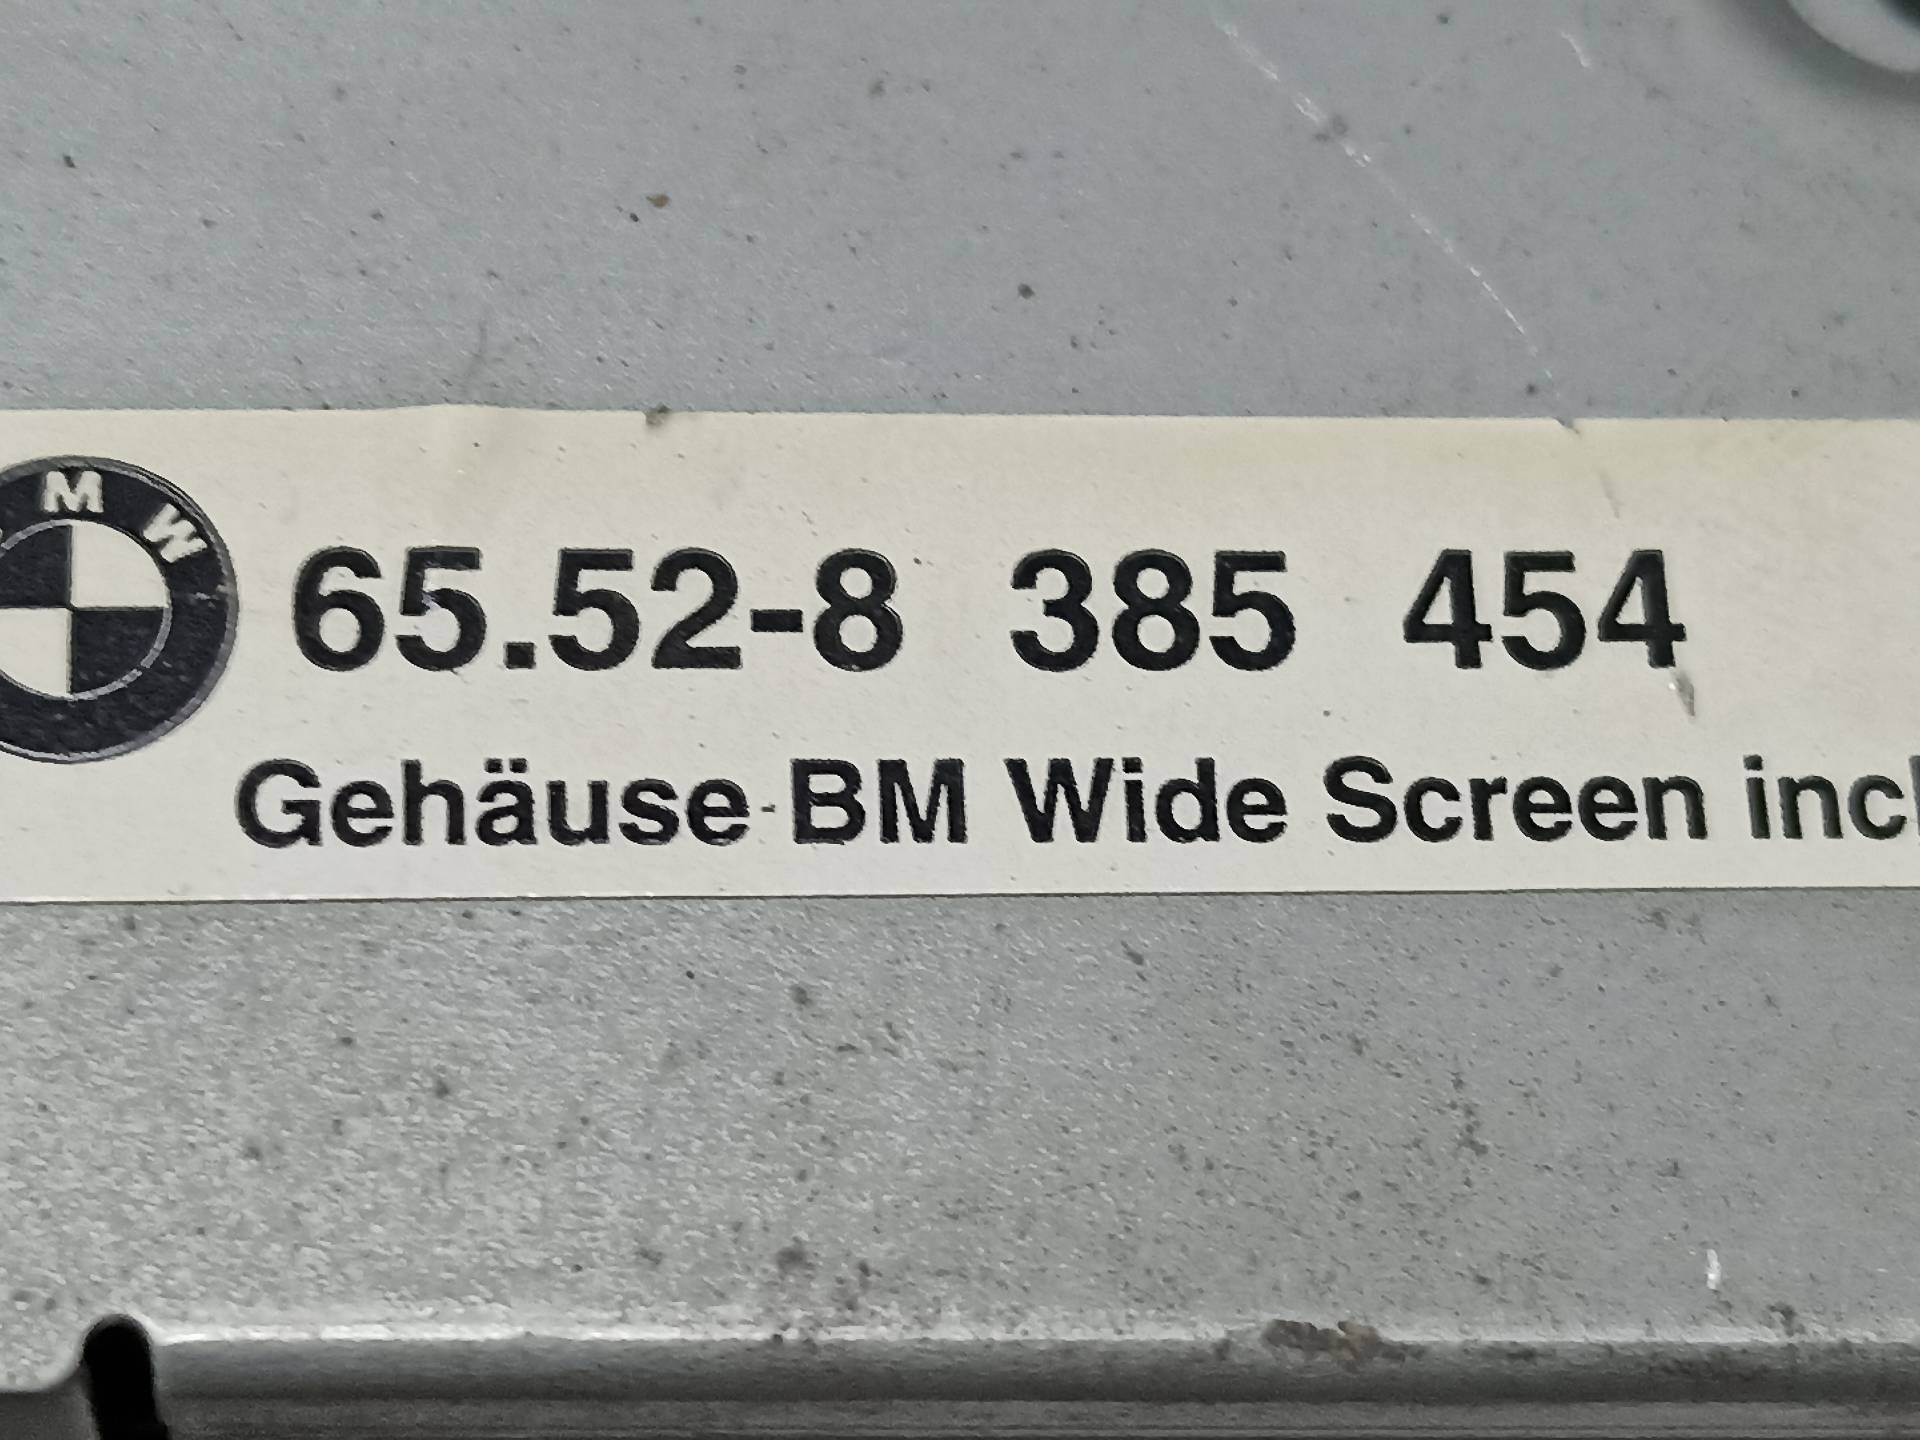 BMW 5 Series E39 (1995-2004) Автомагнитола без навигации 65526913387, 35051280246, 246 24316390